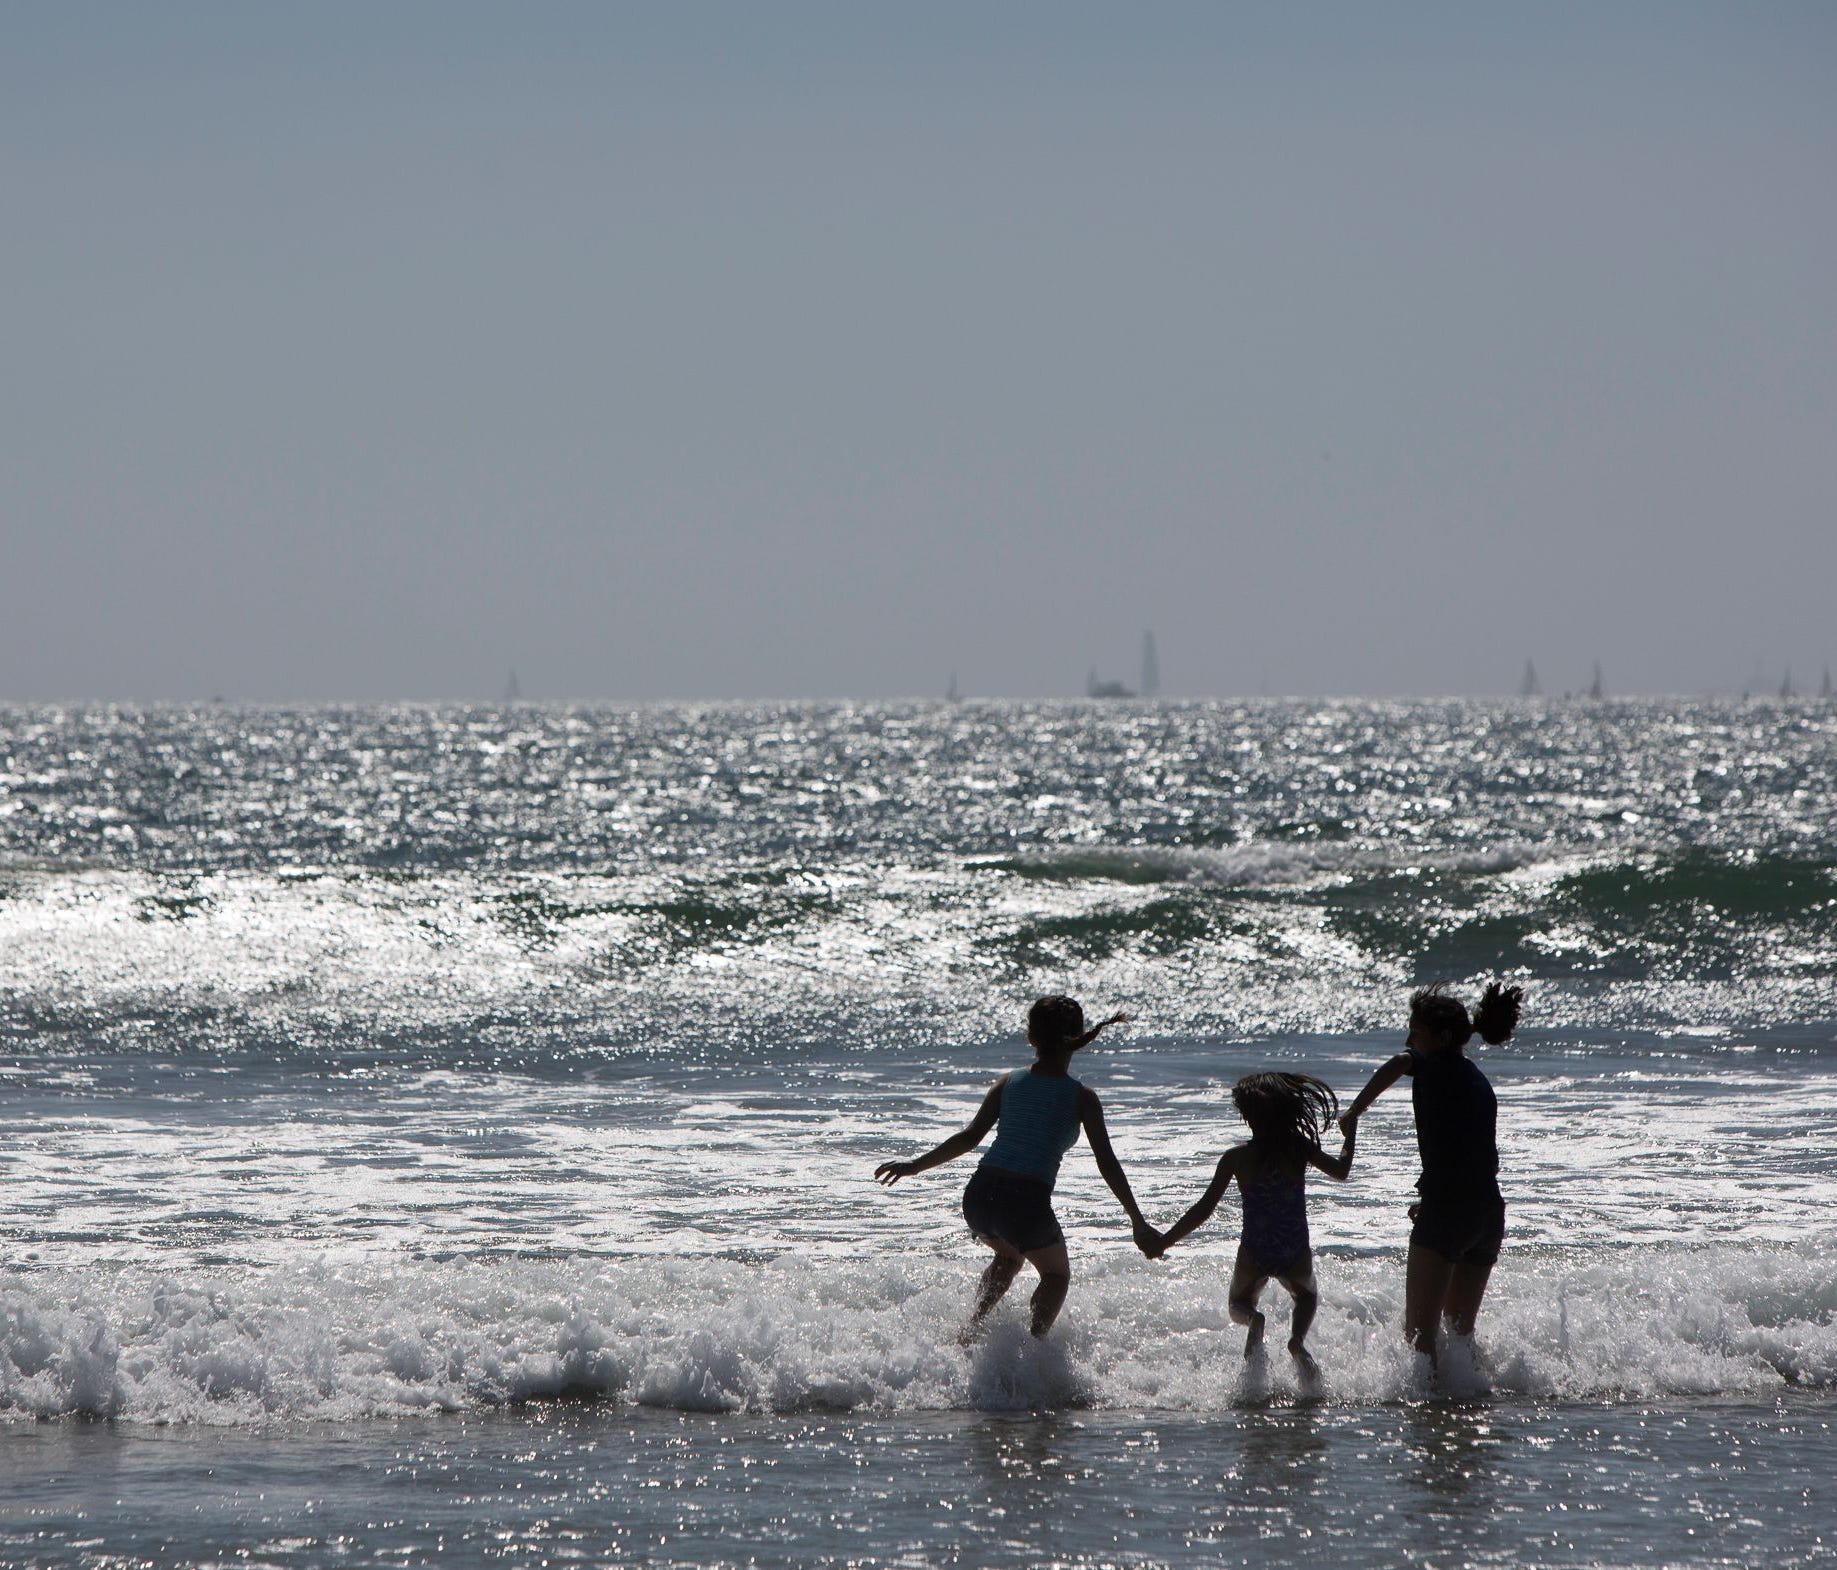 Beachgoers play in the break on Coronado Island in San Diego on April 2, 2017.